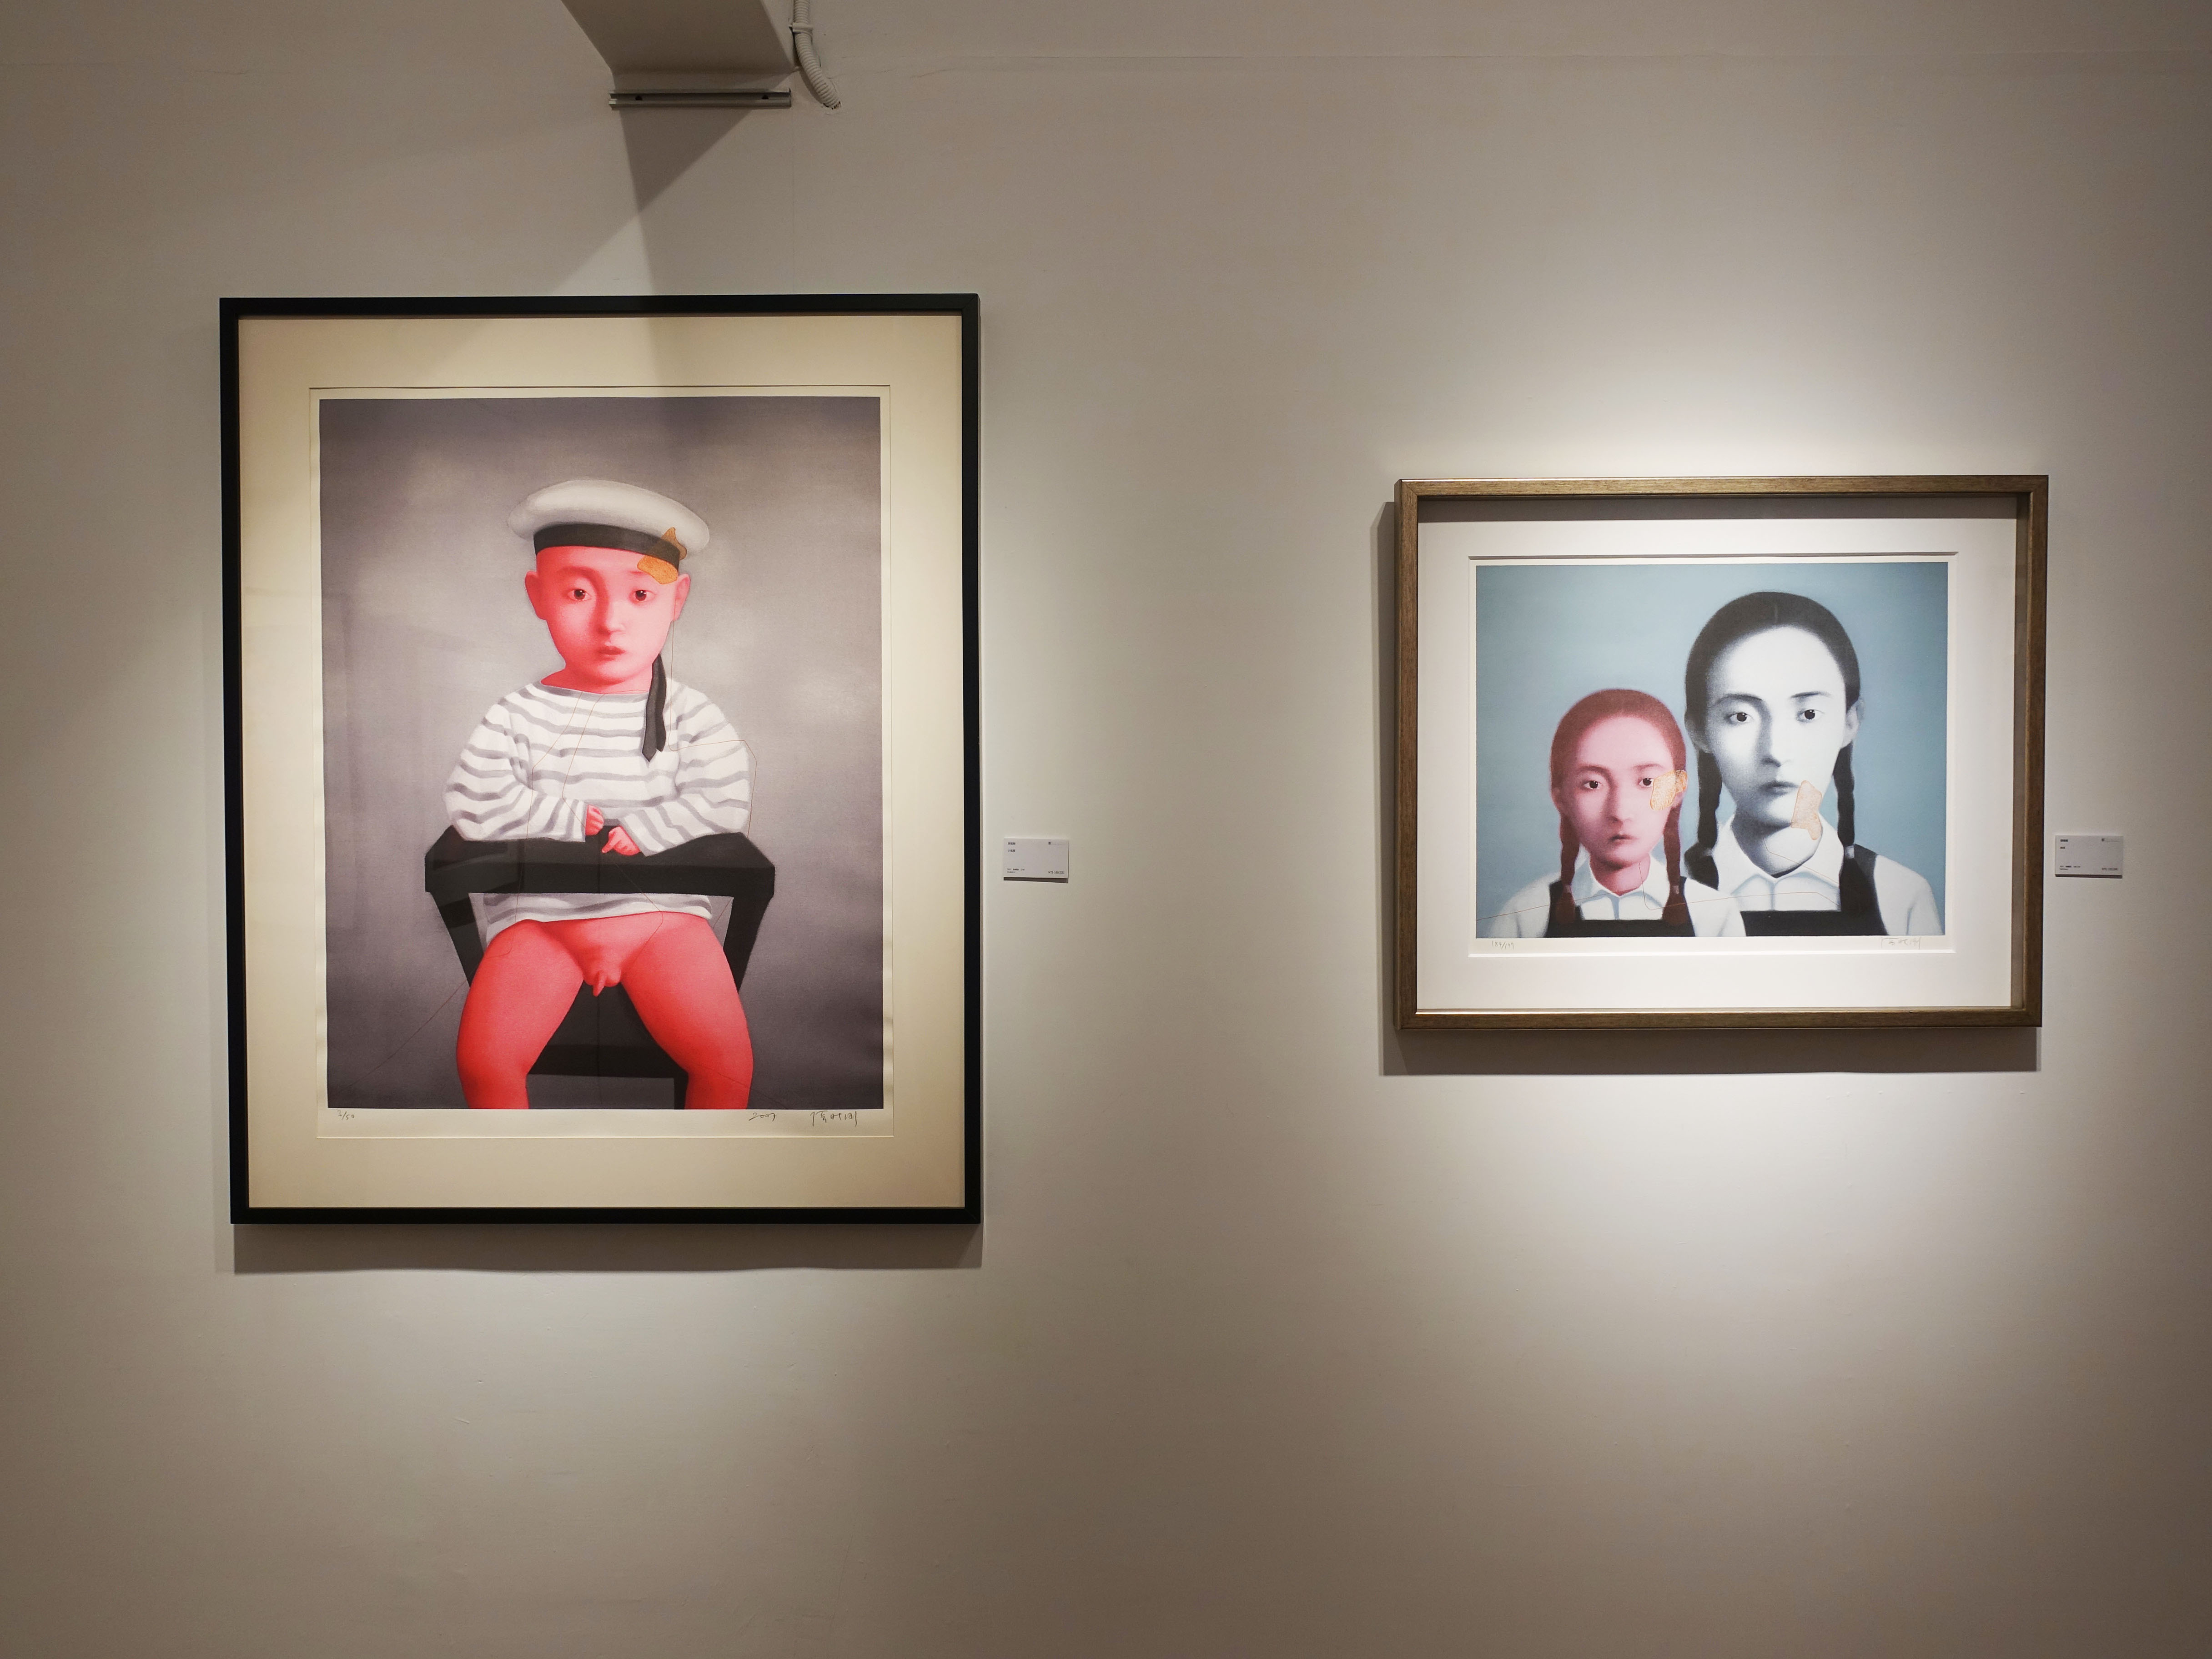 雅逸藝術中心展出中國當代藝術家張曉剛版畫作品。